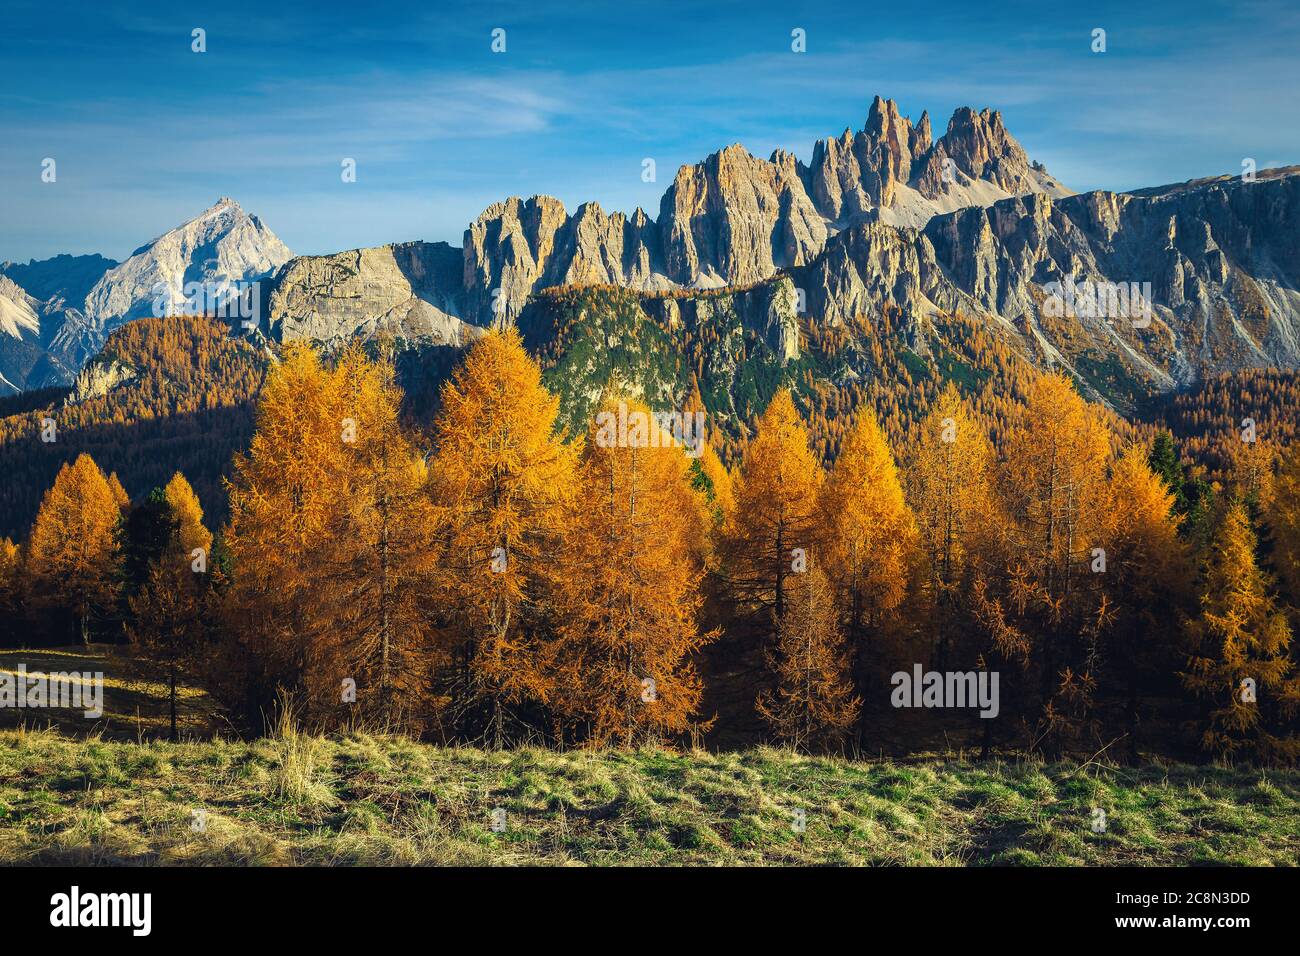 Paisaje alpino de otoño admirable con bosque de alerce colorido y espectaculares montañas en el fondo, Dolomitas, Italia, Europa Foto de stock